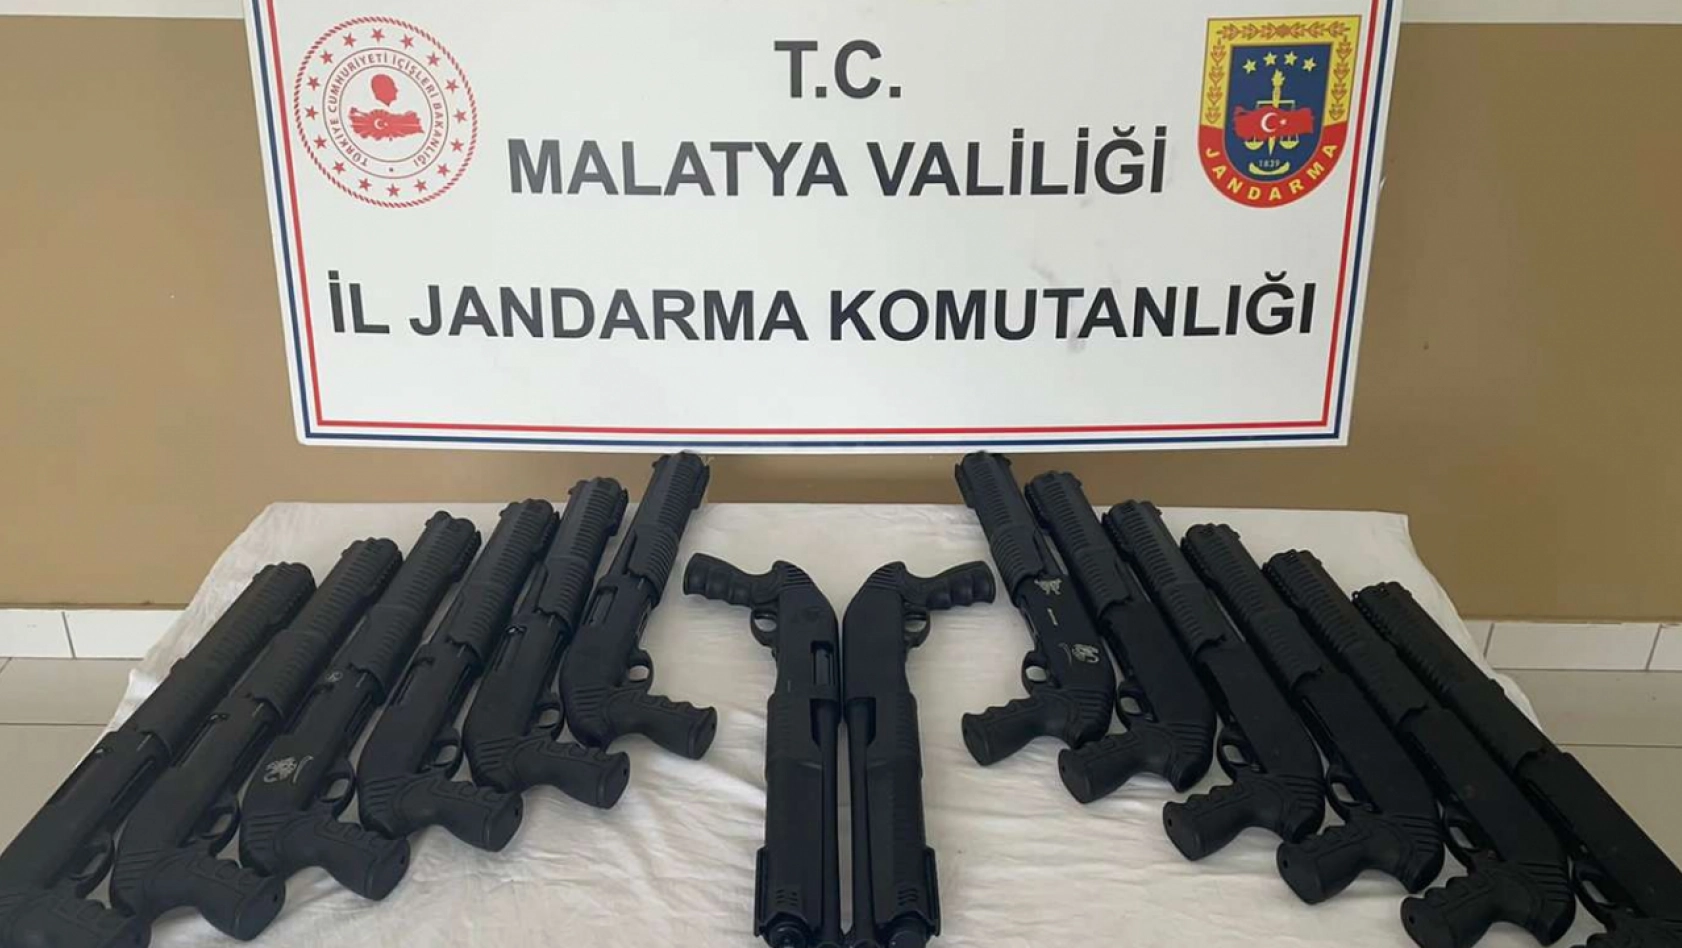 Malatya'da şüphe üzeri durdurulan araçtan 14 adet pompalı tüfek çıktı